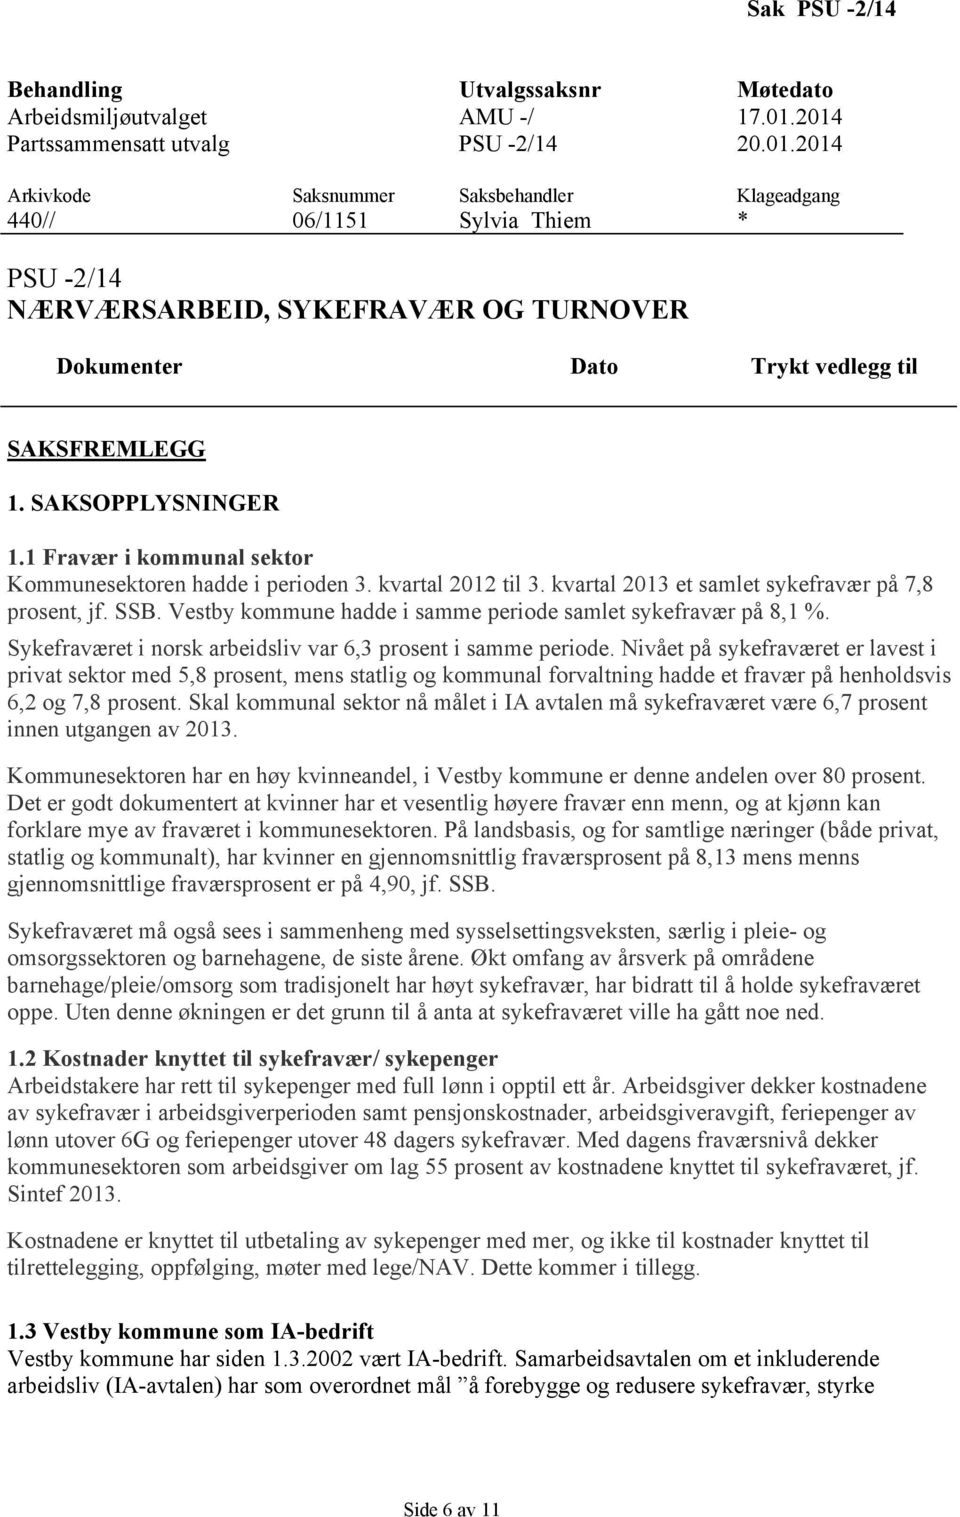 SAKSOPPLYSNINGER 1.1 Fravær i kommunal sektor Kommunesektoren hadde i perioden 3. kvartal 2012 til 3. kvartal 2013 et samlet sykefravær på 7,8 prosent, jf. SSB.